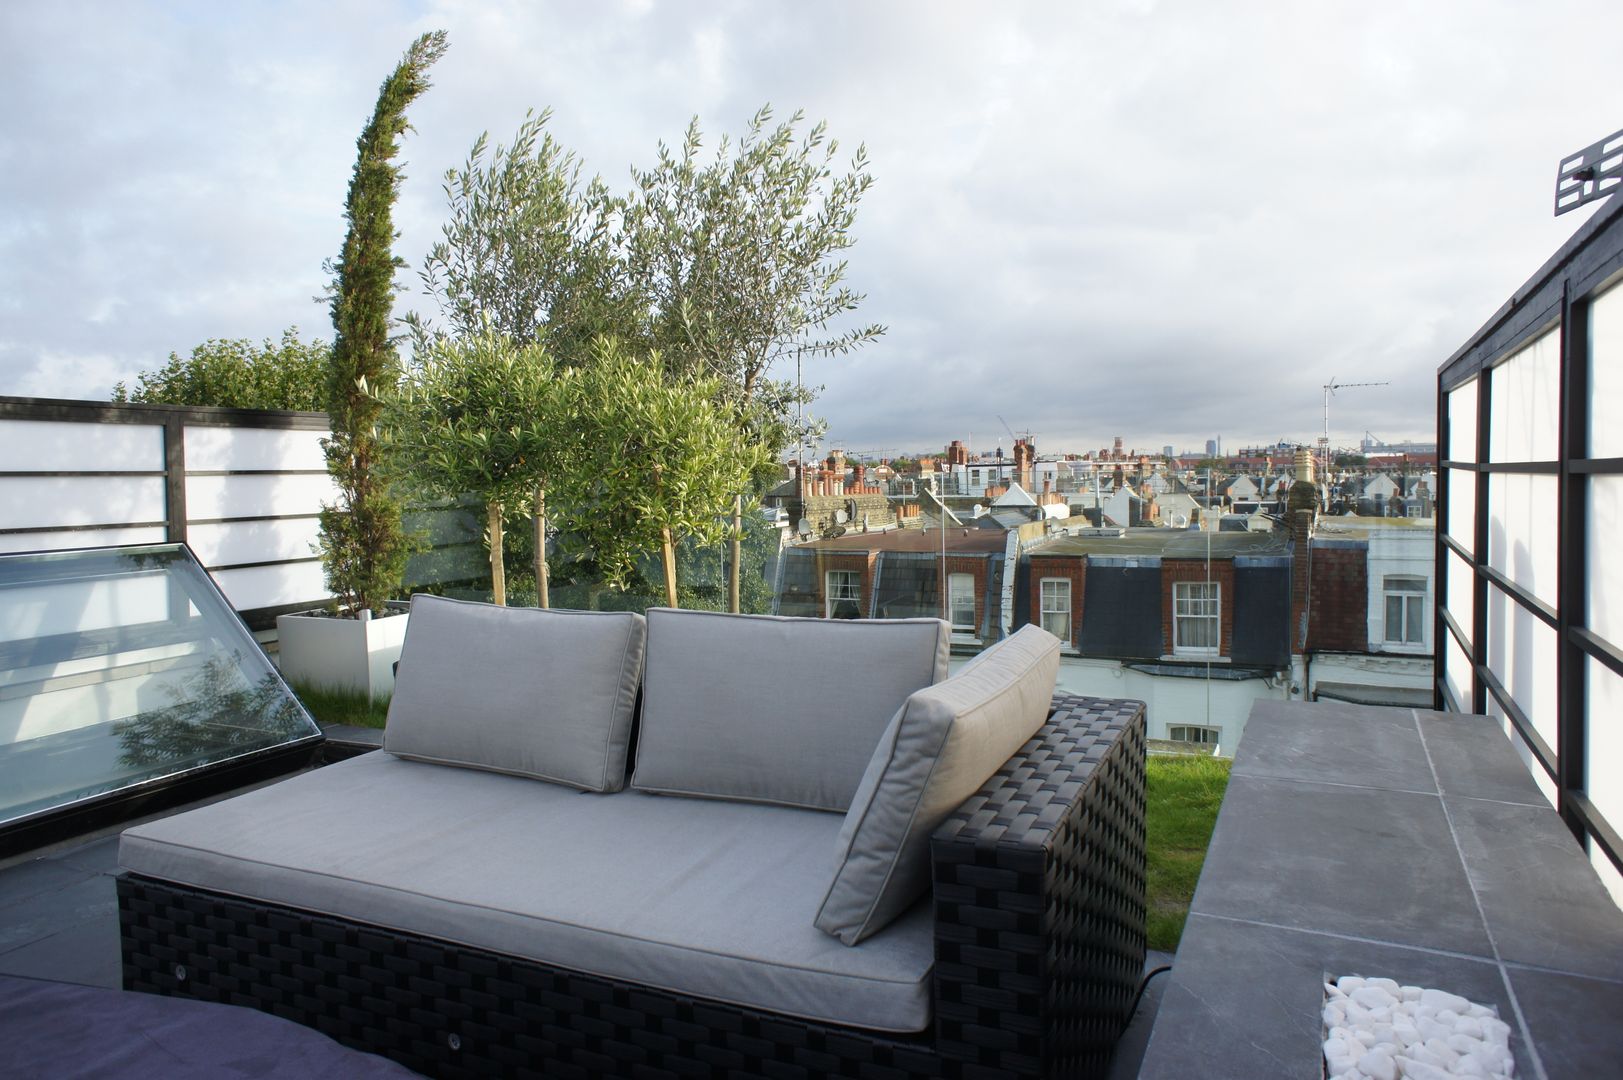 Fulham Roof Terrace, Organic Roofs Organic Roofs Minimalistische balkons, veranda's en terrassen